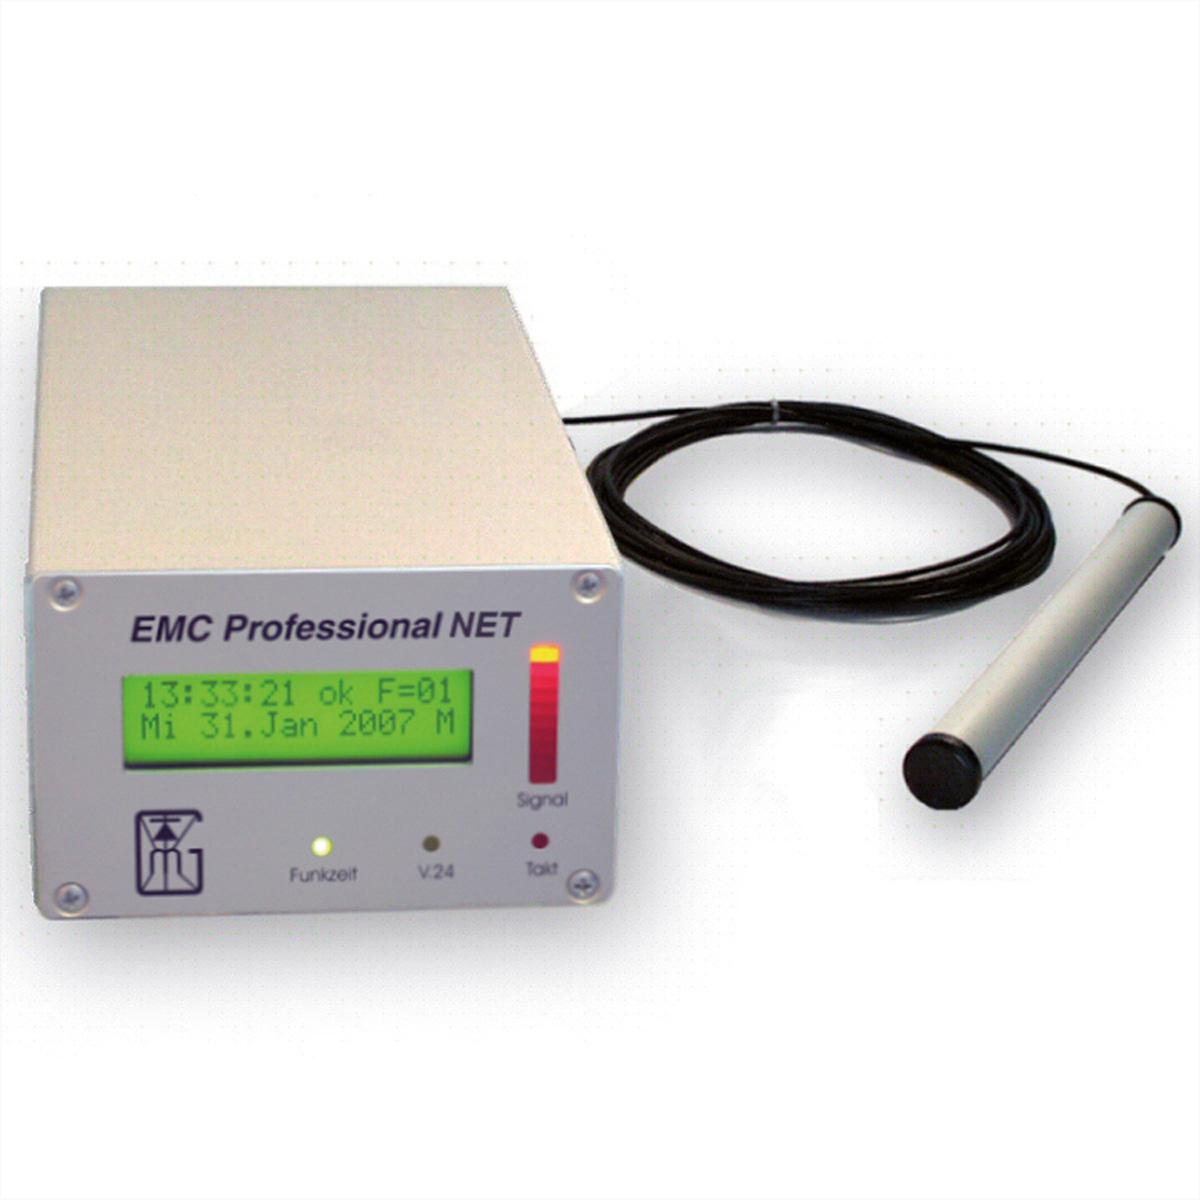 GUDE 3001 EMC Professional Zeitserver, integrierte Funkuhr für Industrieumgebungen, ext. Antenne, Tower